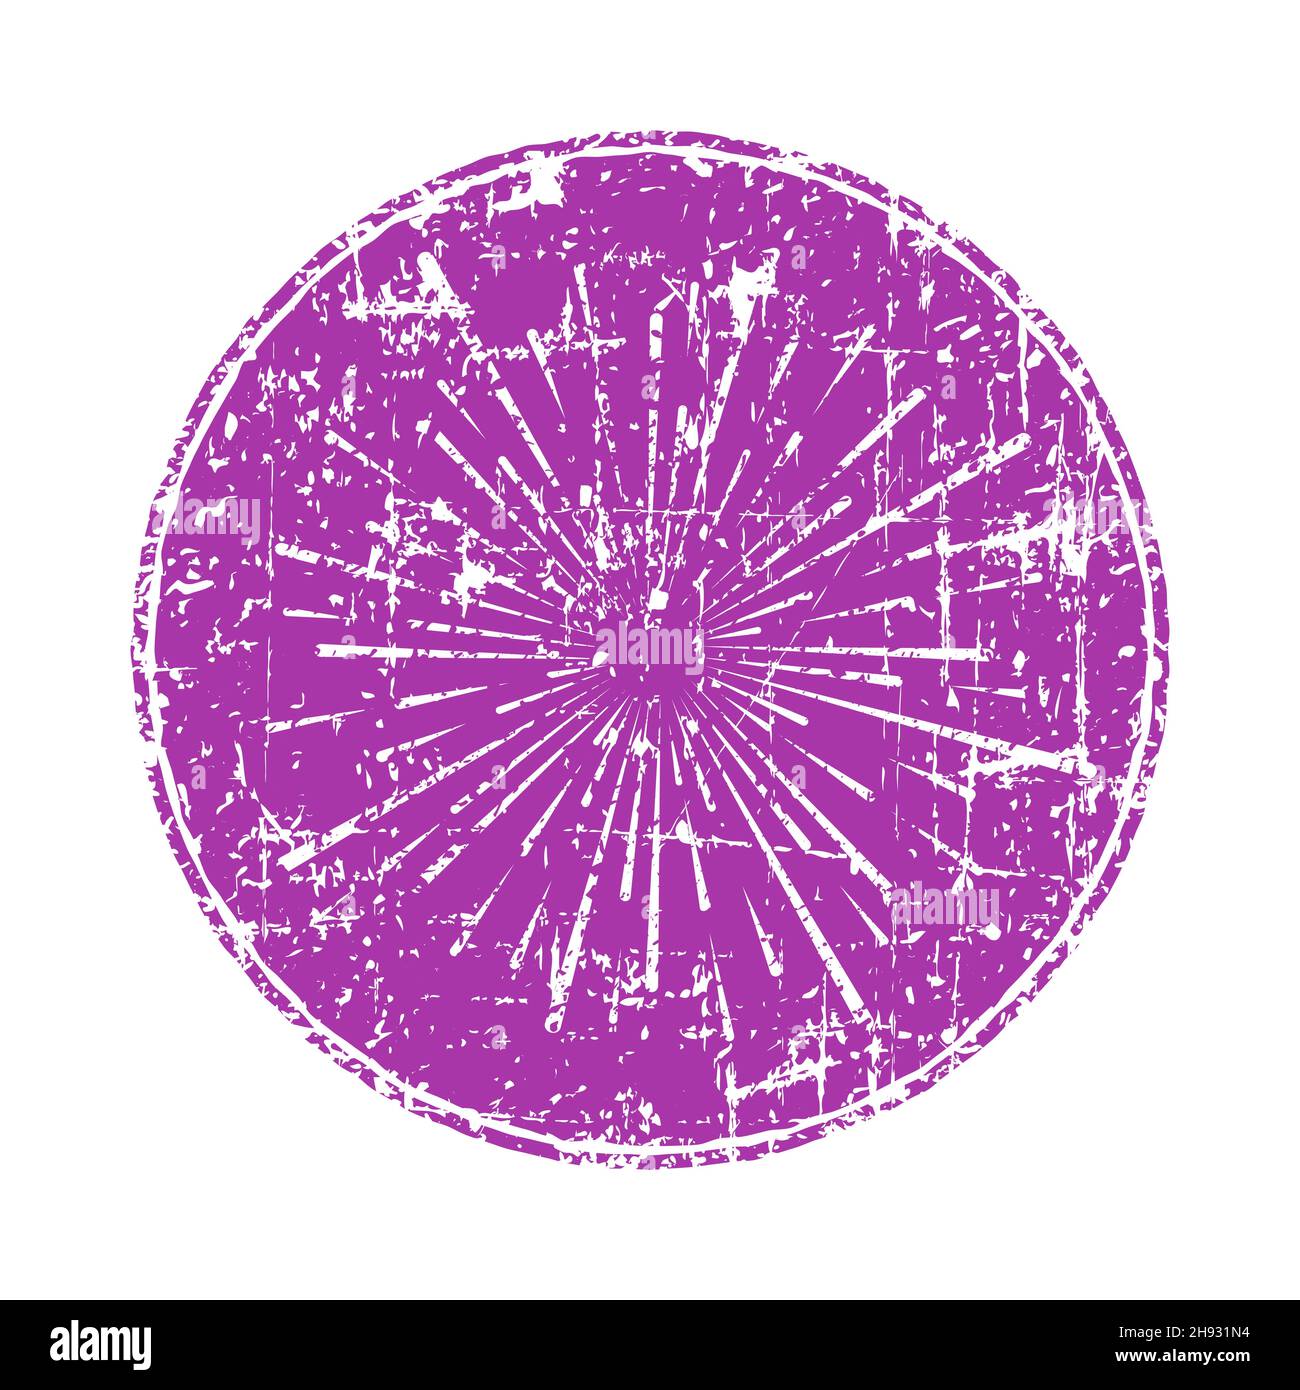 Abstrakte grunge violette Form. Vektorgrafik. Feuerwerk. Sternstrahlen. Explosion. Grungy Design-Element für Drucke, Web, Vorlage, Logo, Tattoo Stock Vektor